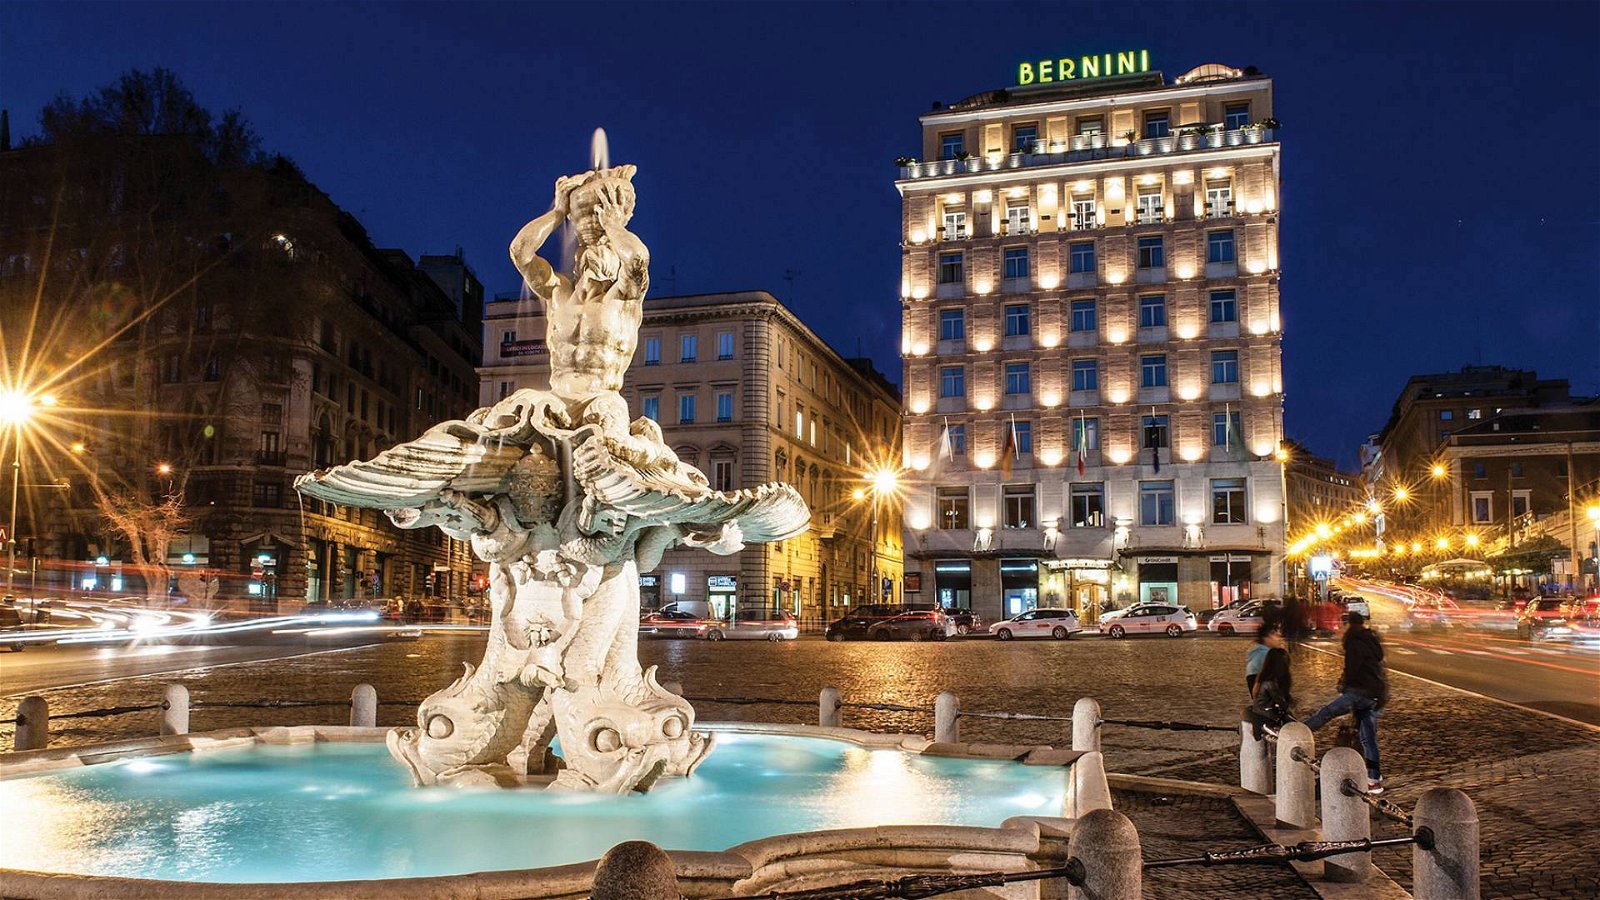 Immagine di Sina Bernini Bristol di Roma, il primo hotel 5 stelle con 5G grazie a INWIT (Telecom Italia)